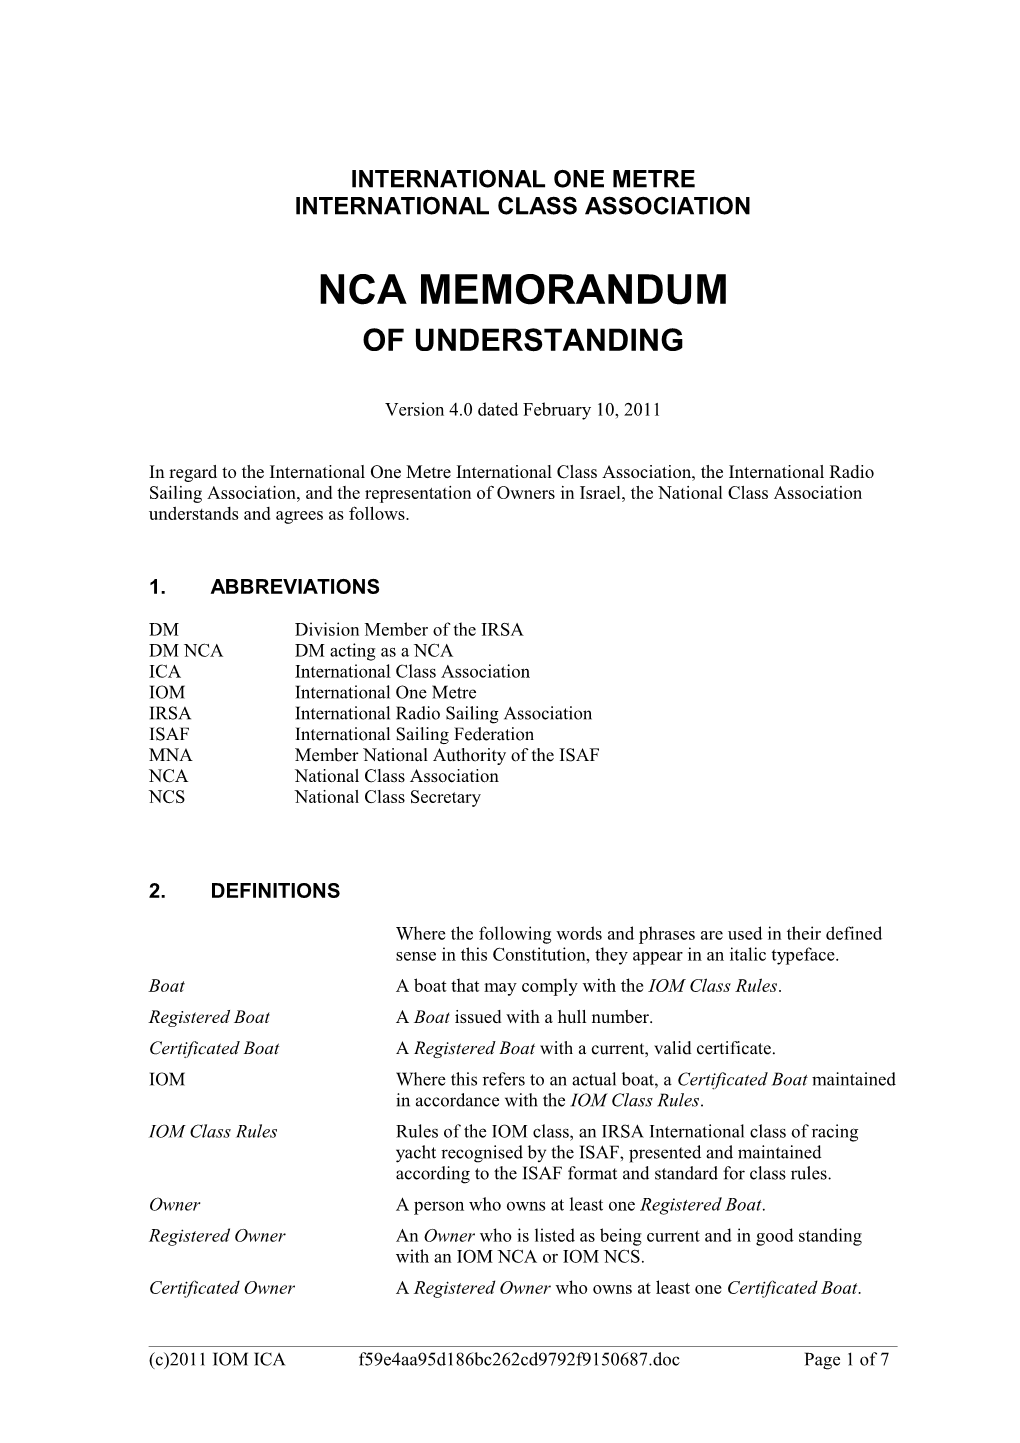 IOM ICA NCA Memorandum (Version 3.0)